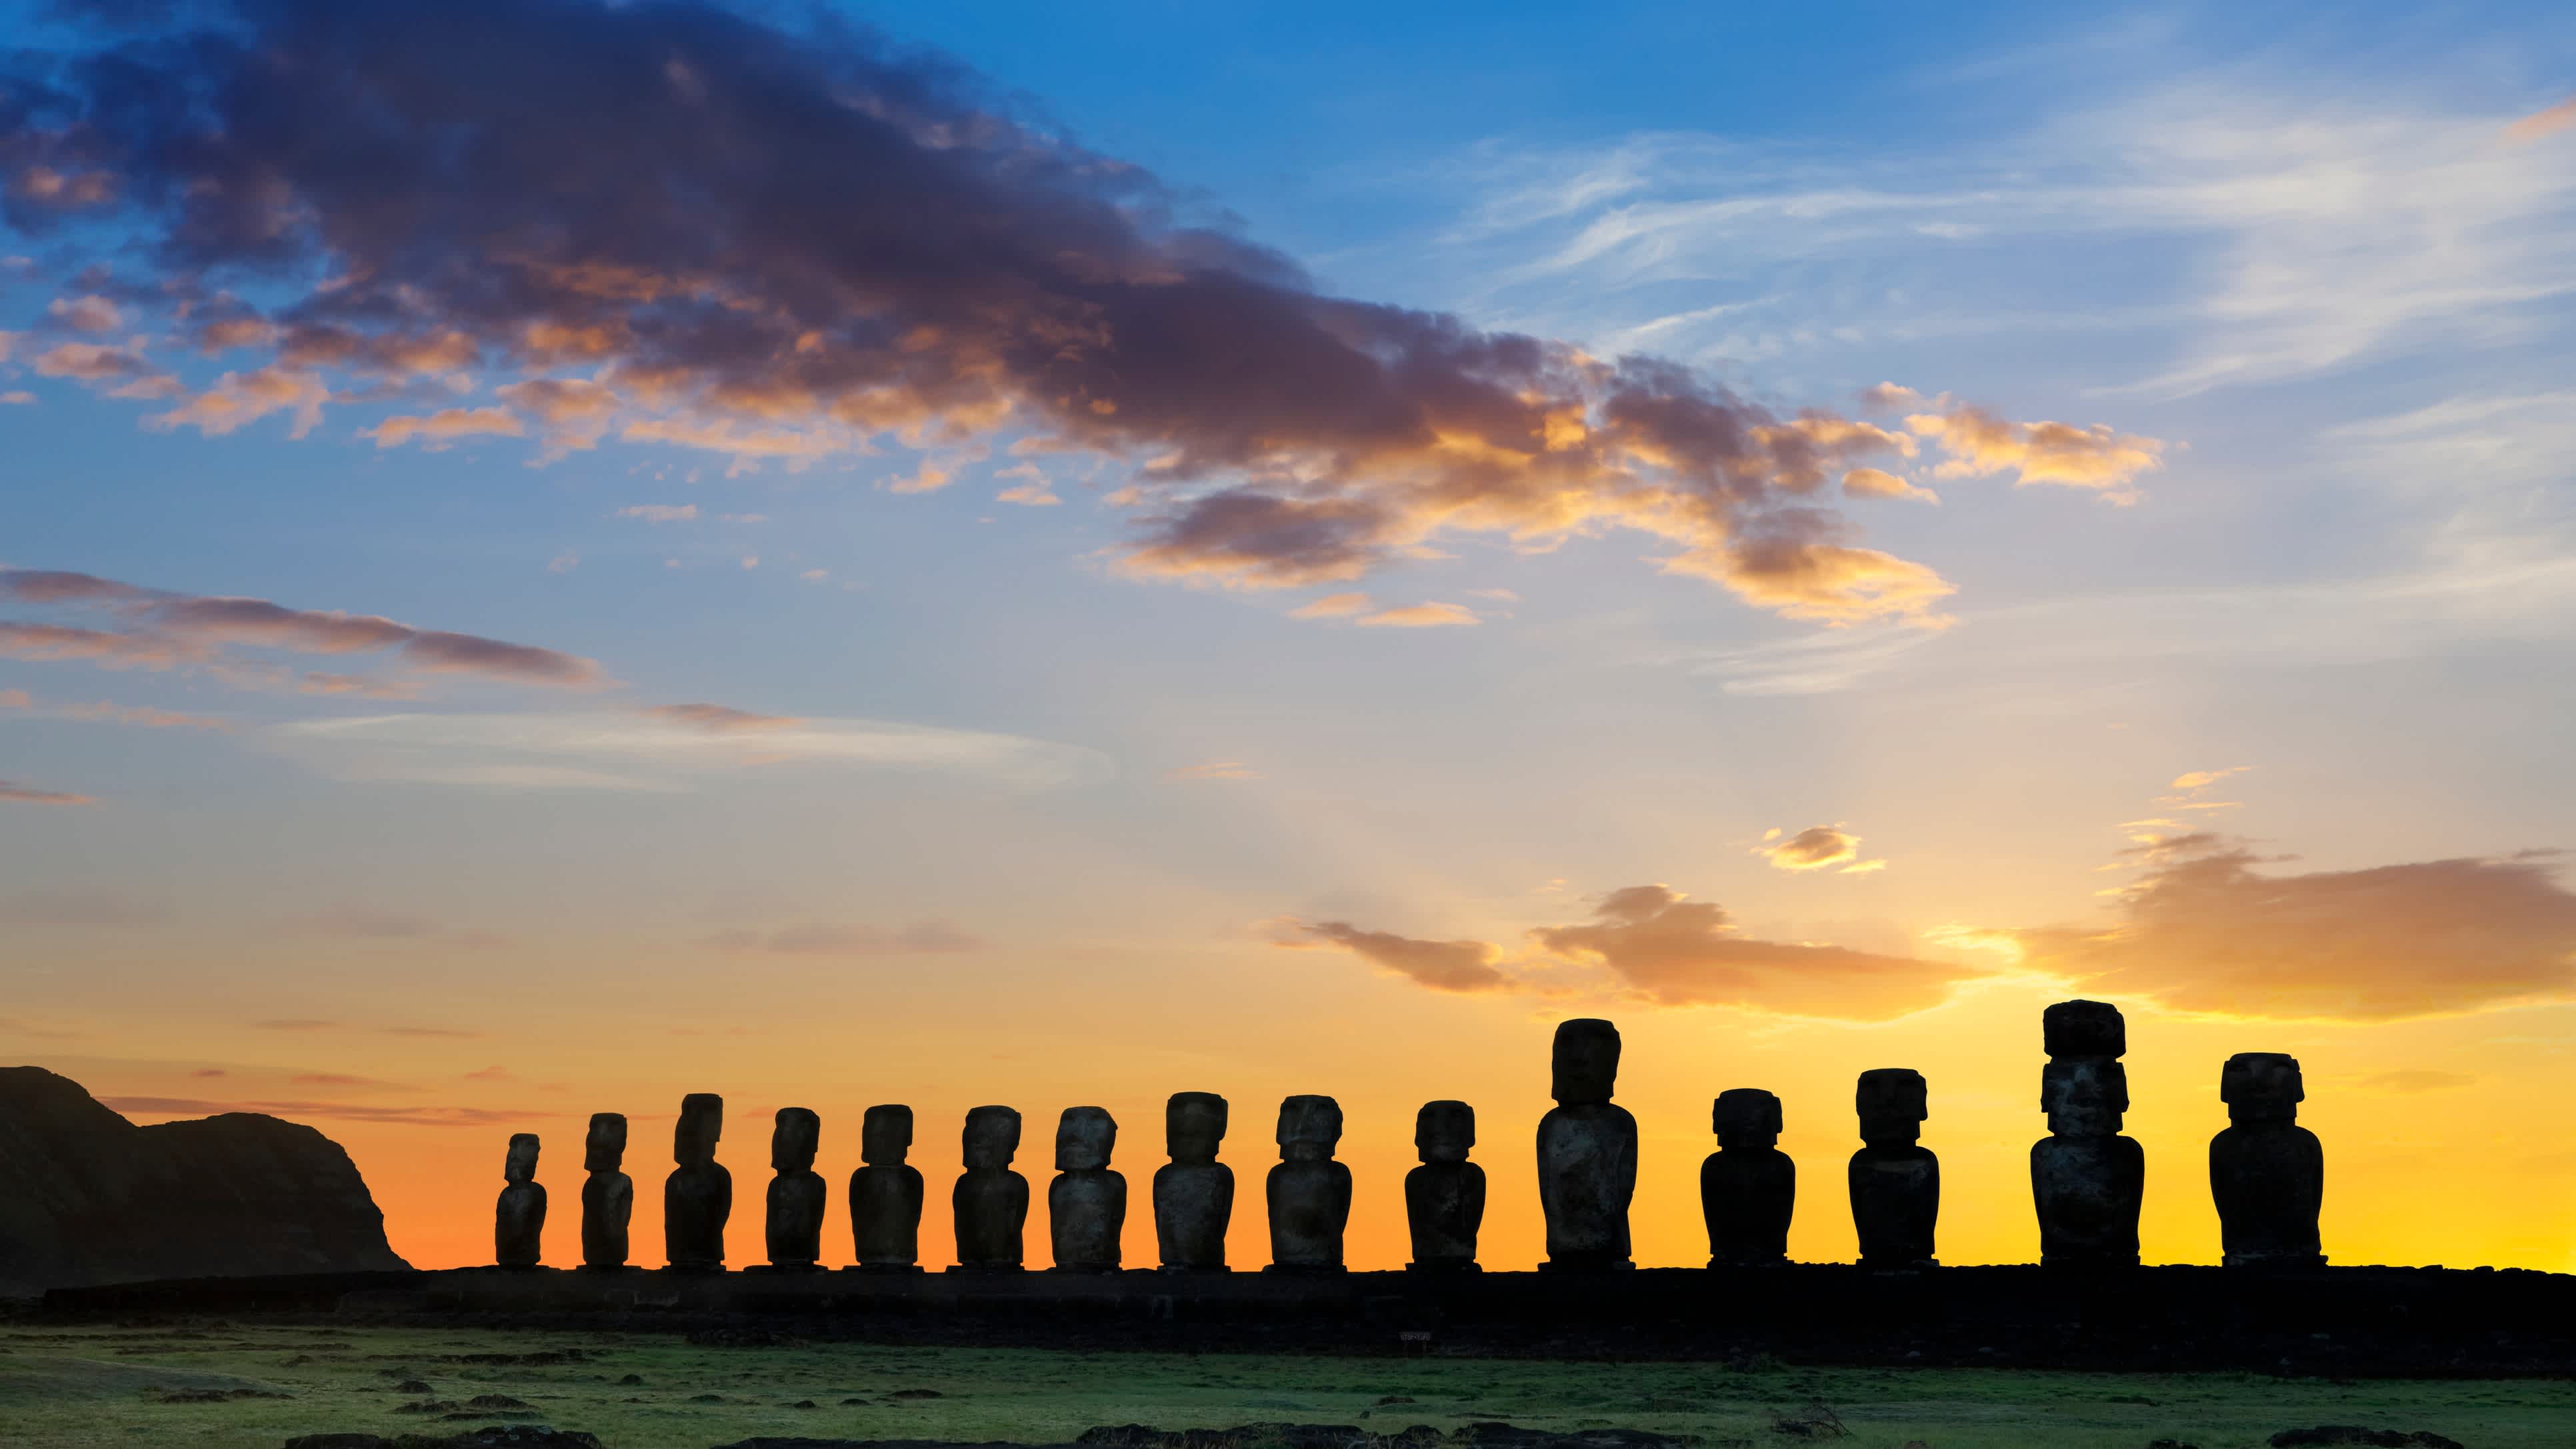 Magnifique panorama sur les statues millénaires de l'Île de Pâques au coucher du soleil, étape incontournable pour tous les voyageurs en voyage au Chili.